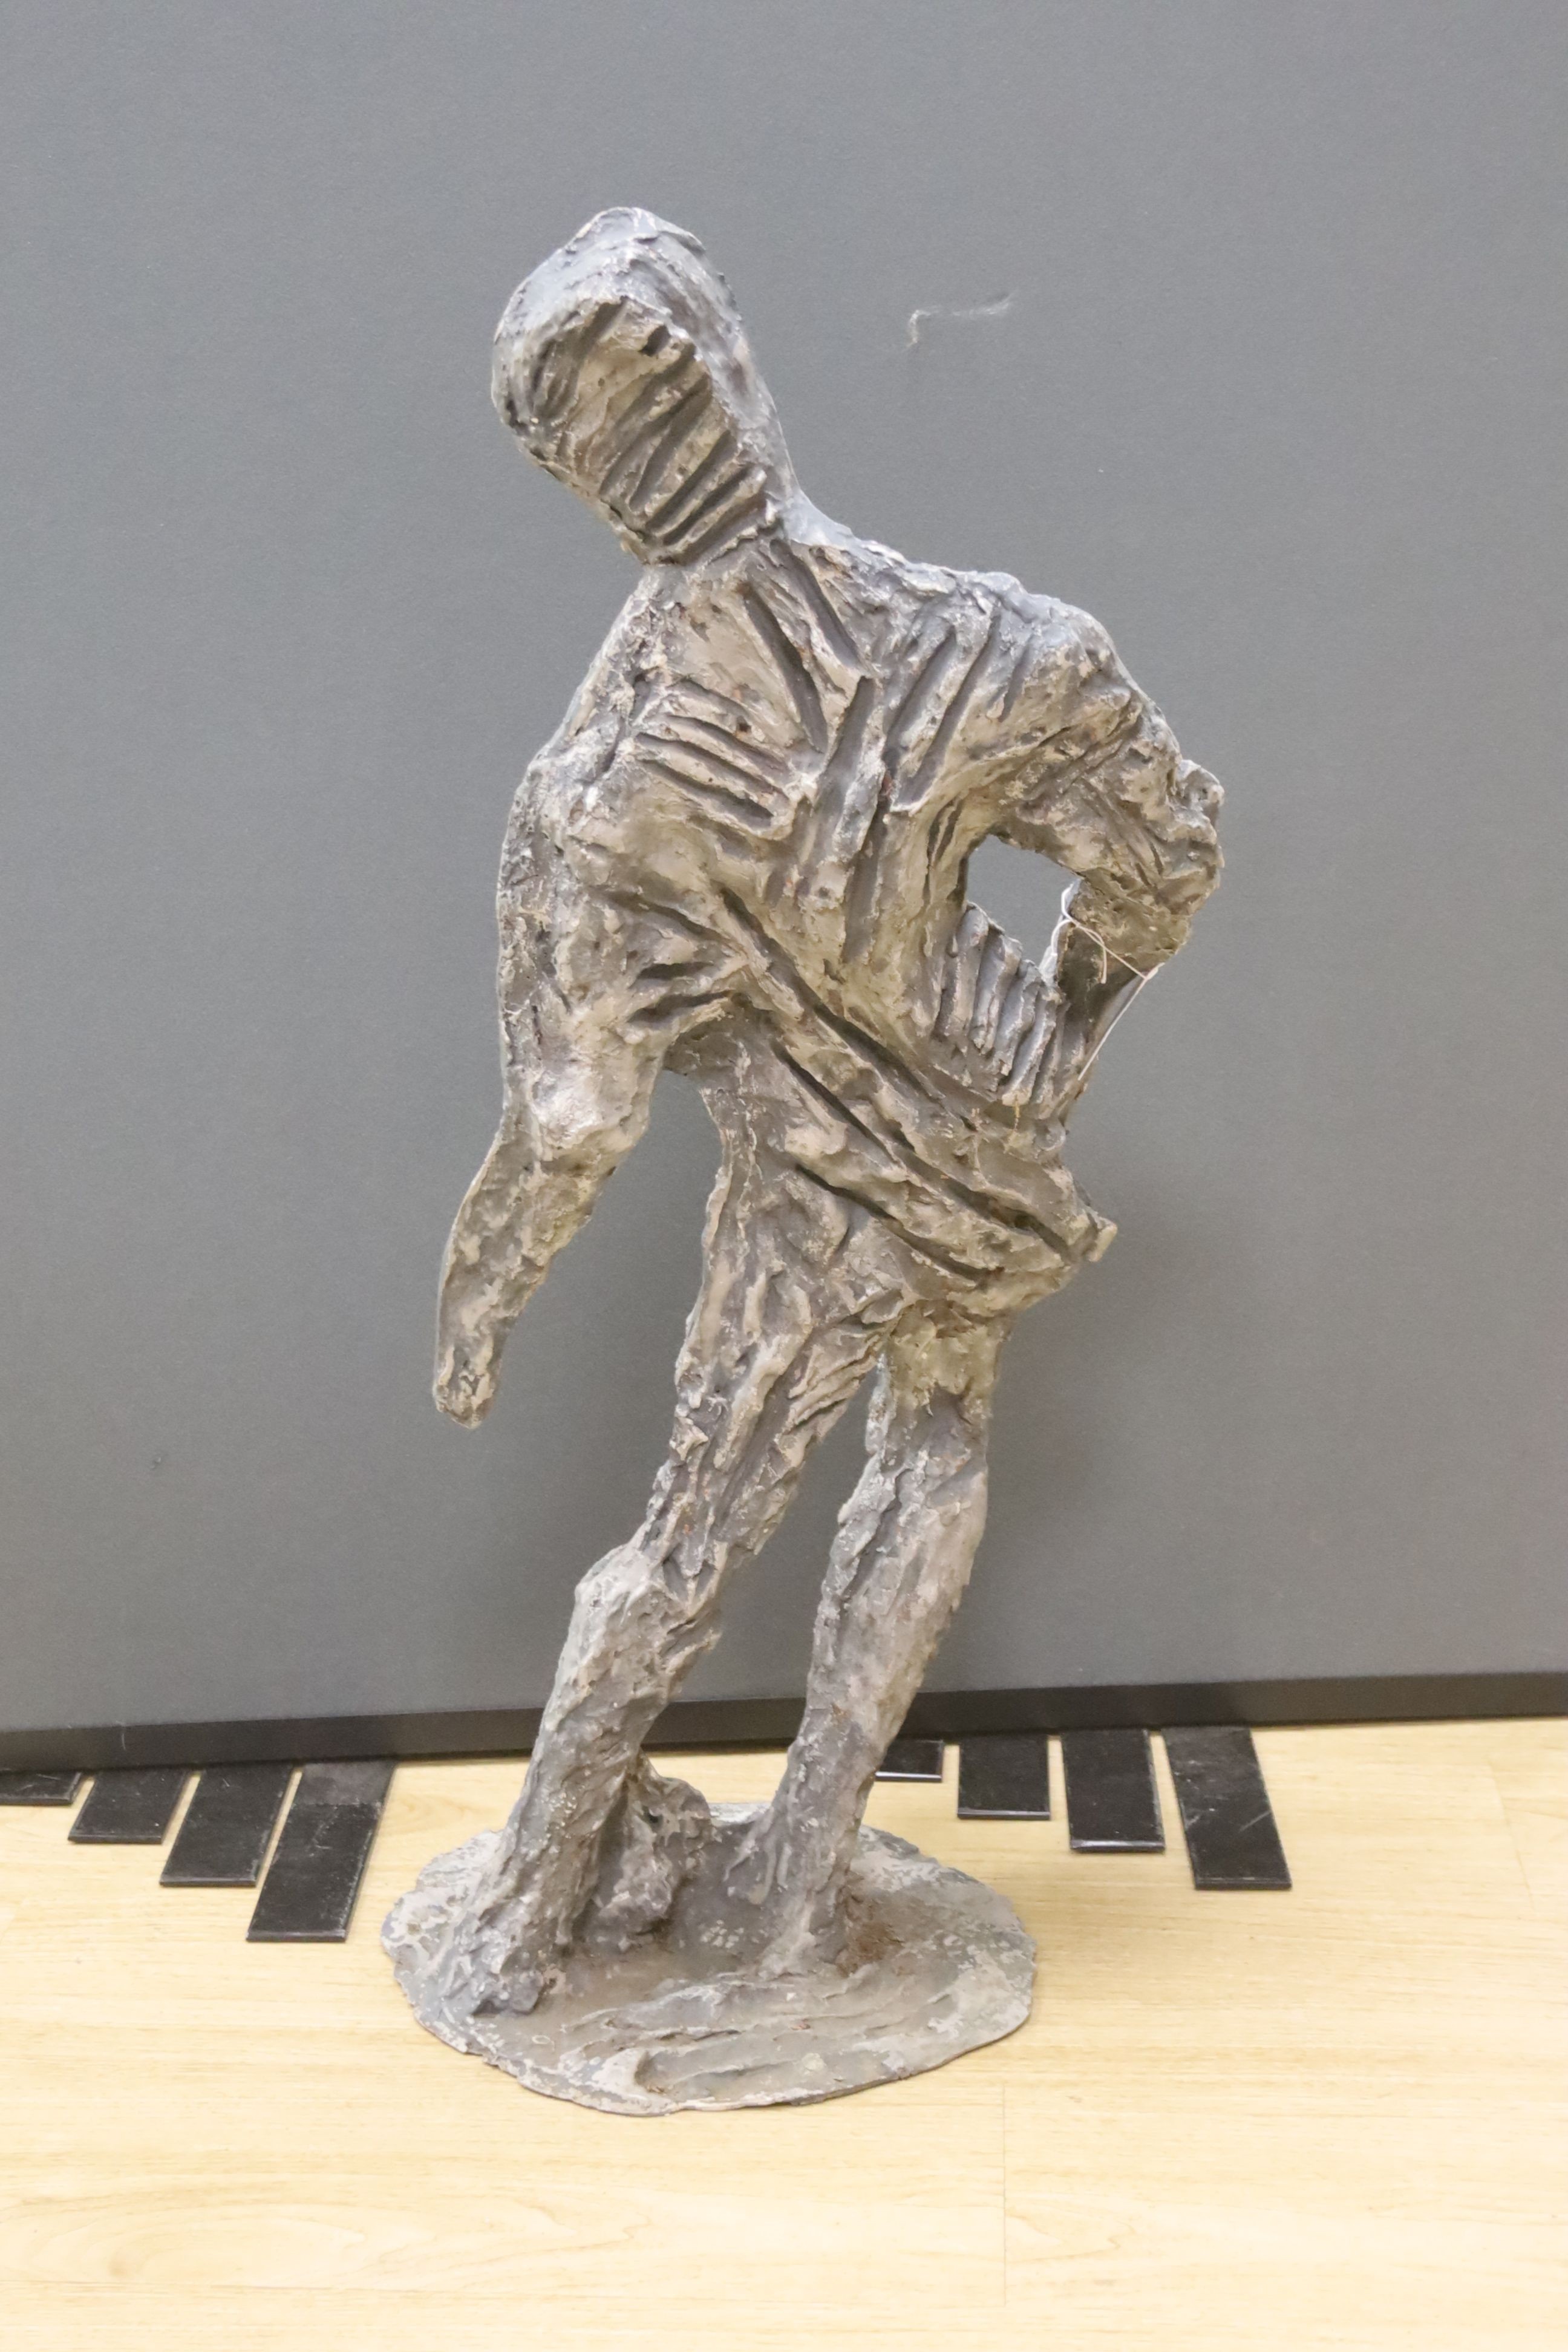 A fibreglass model of a footballer, height 83cm